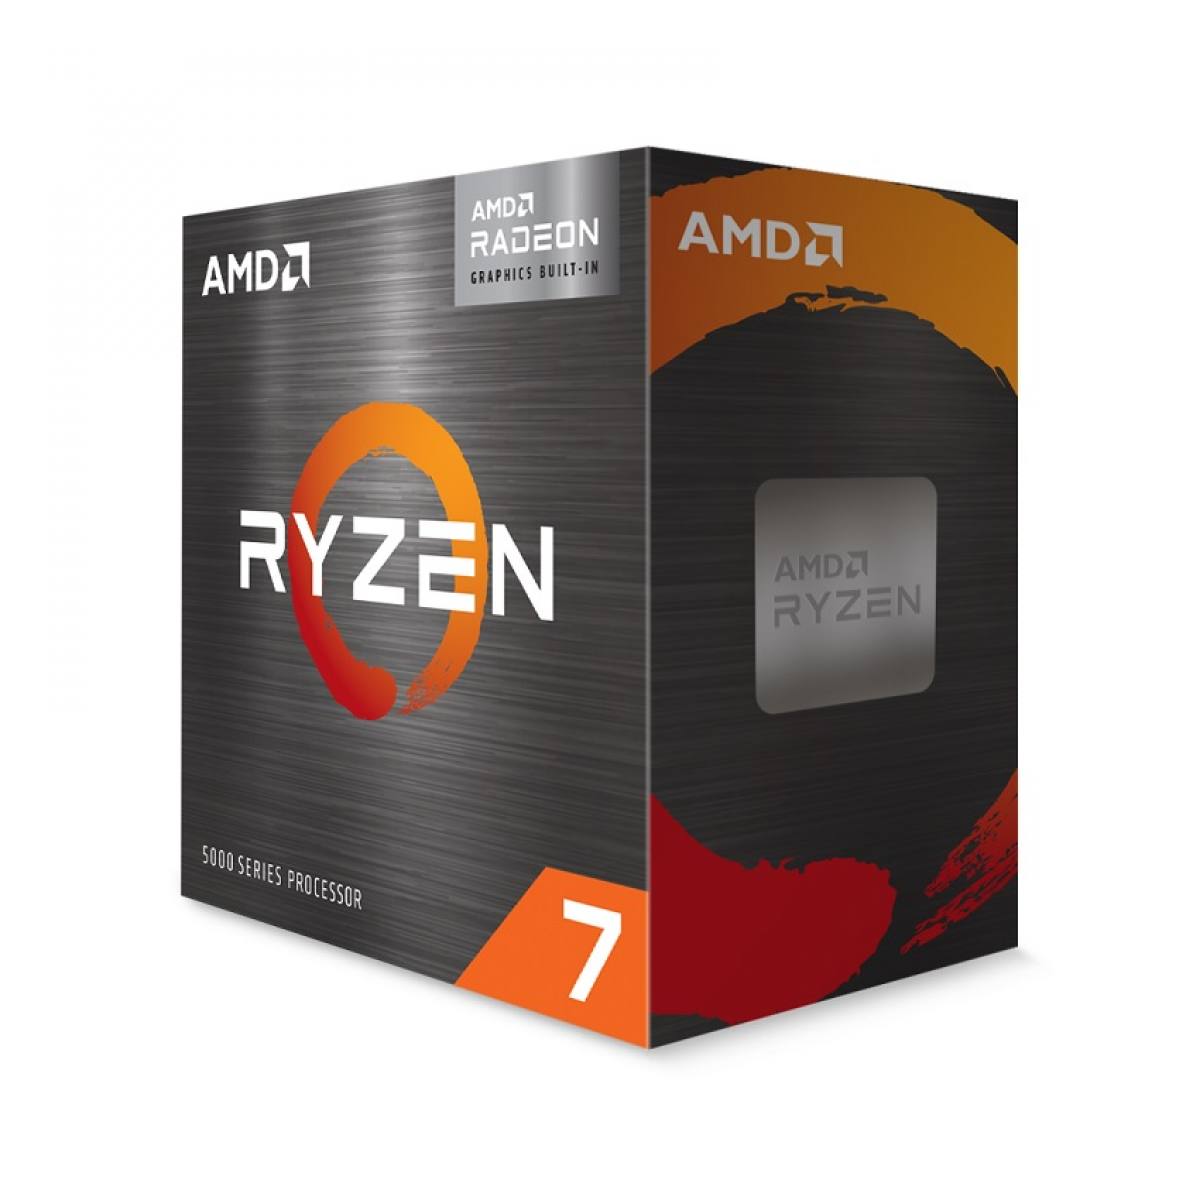 CPU AMD Ryzen 7 5700G (3.8GHz boost 4.6GHz, 8 nhân 16 luồng, 20MB Cache, 65W, Socket AM4)